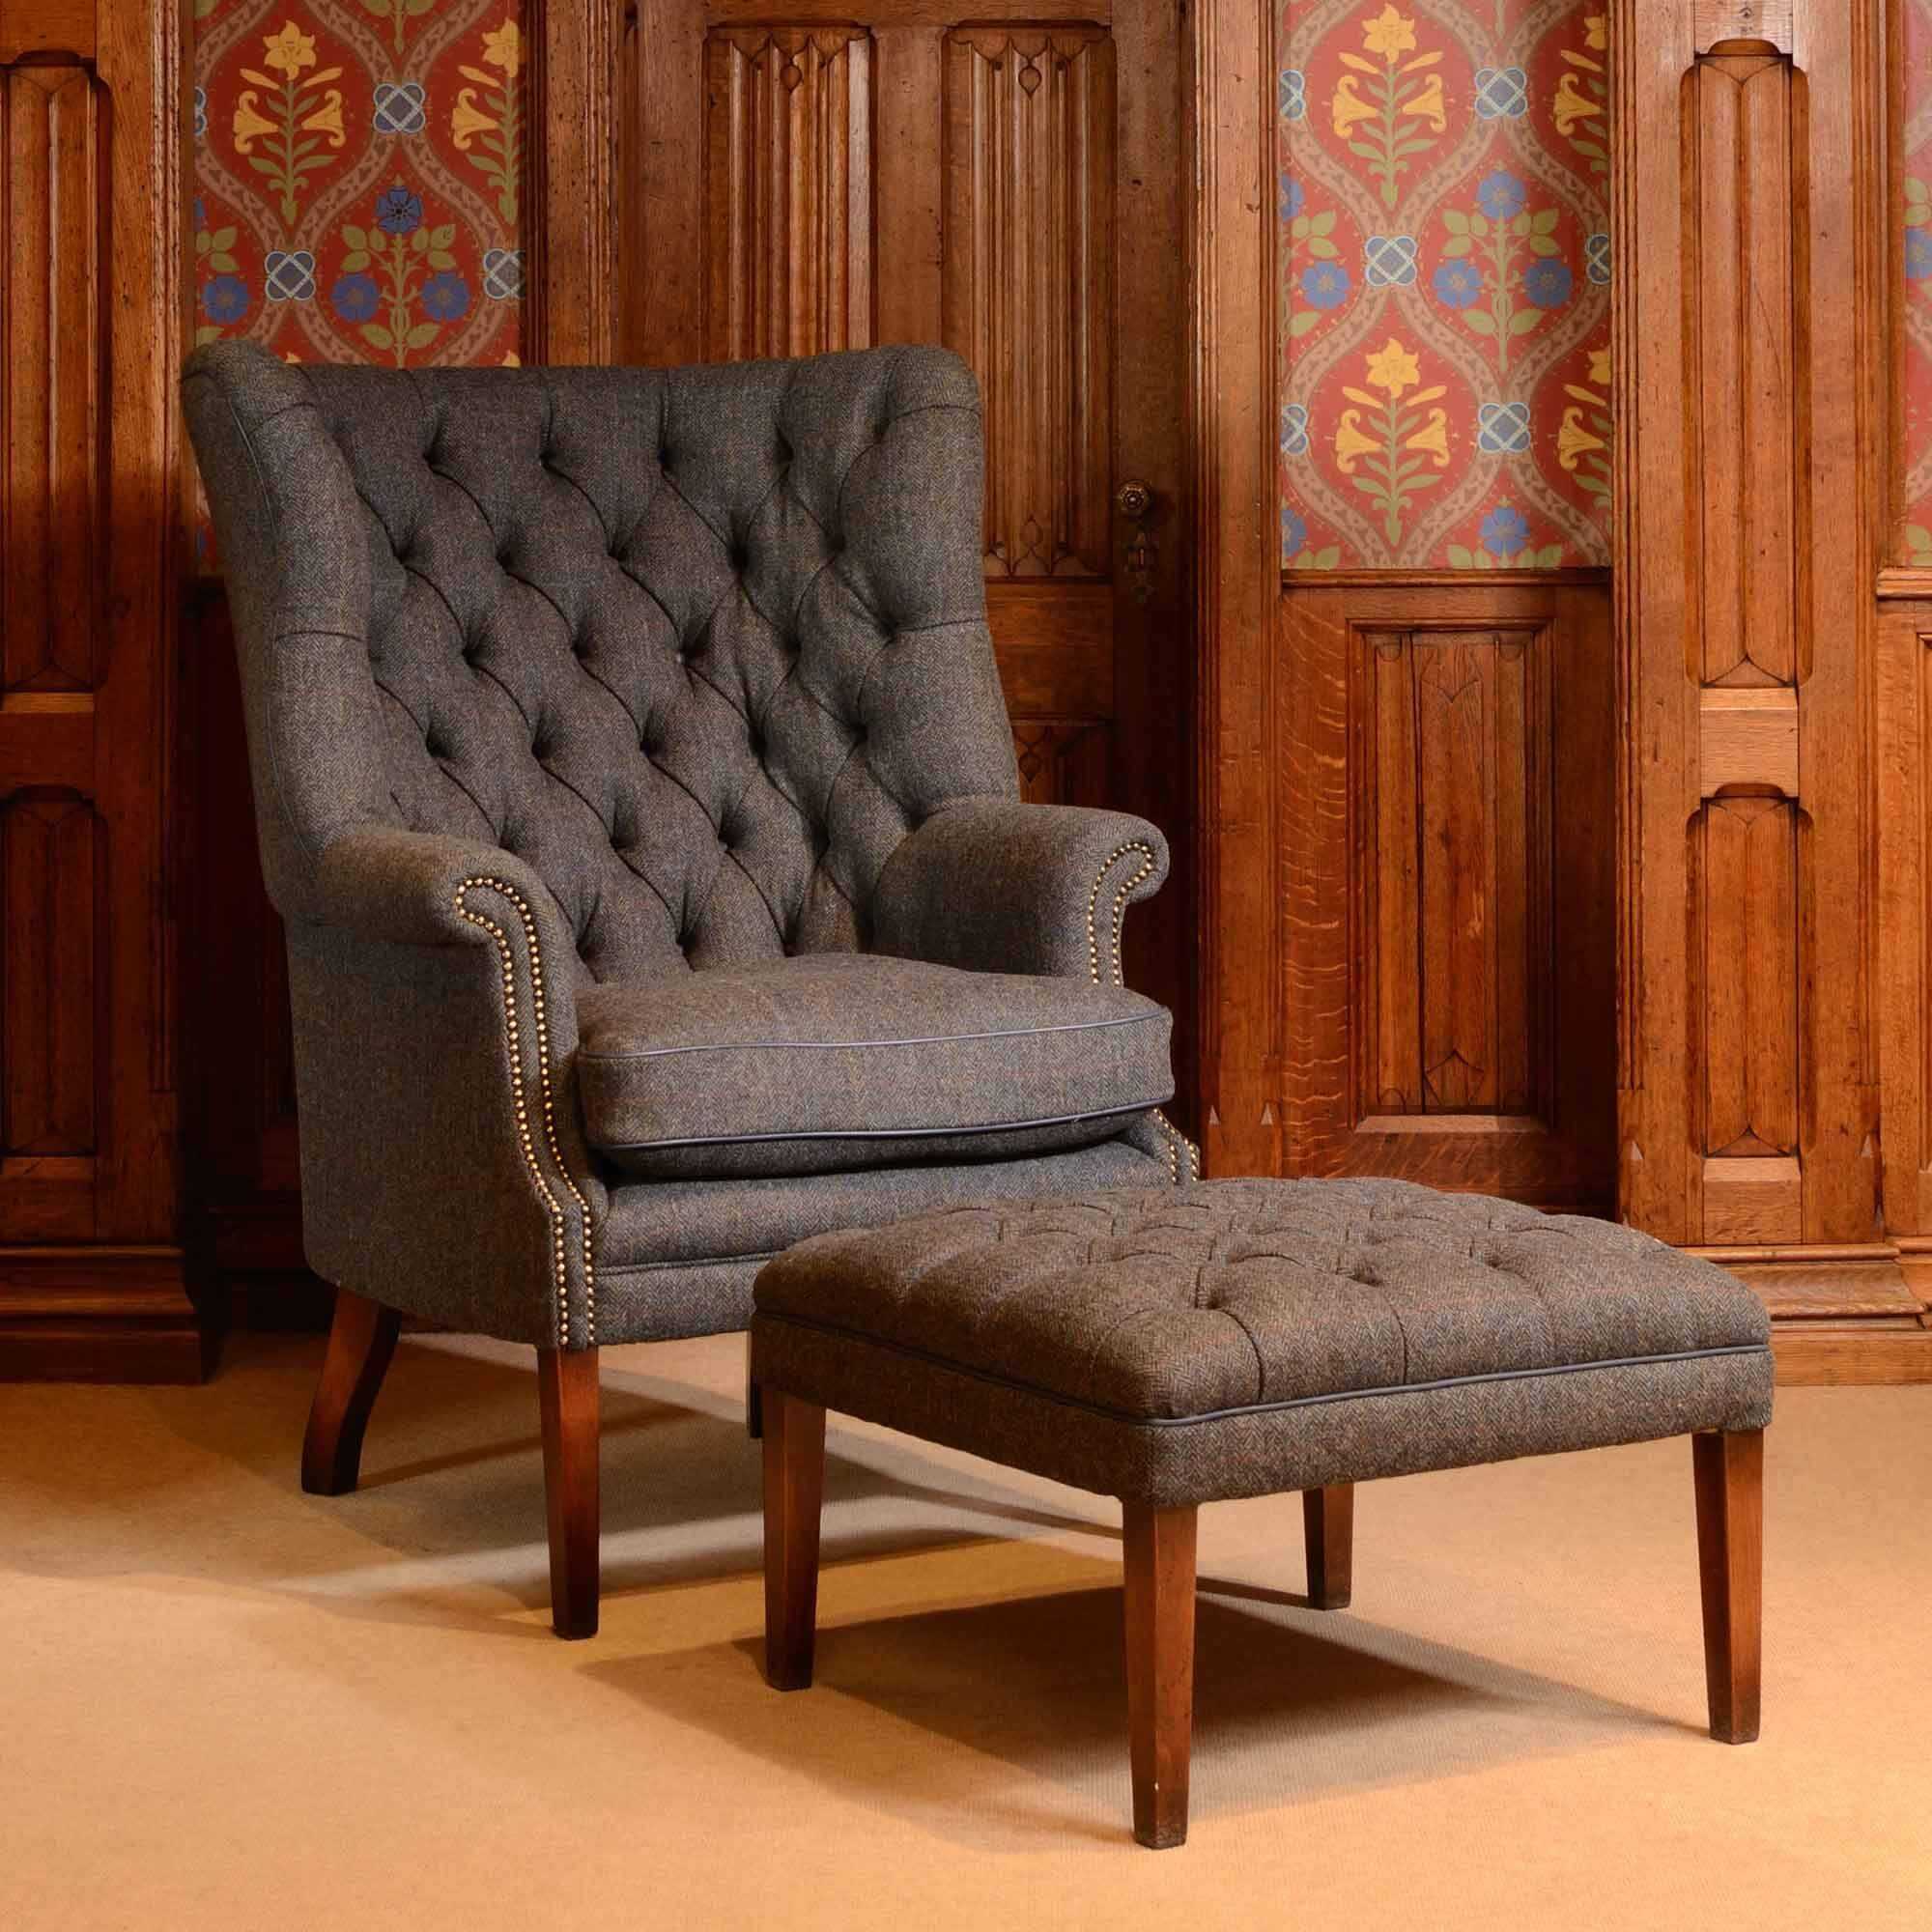 Кресла с высокой спинкой: мягкое в английском стиле, для отдыха дома и с «ушами», узкое и на полозьях, классическое на ножках и другие удобные модели